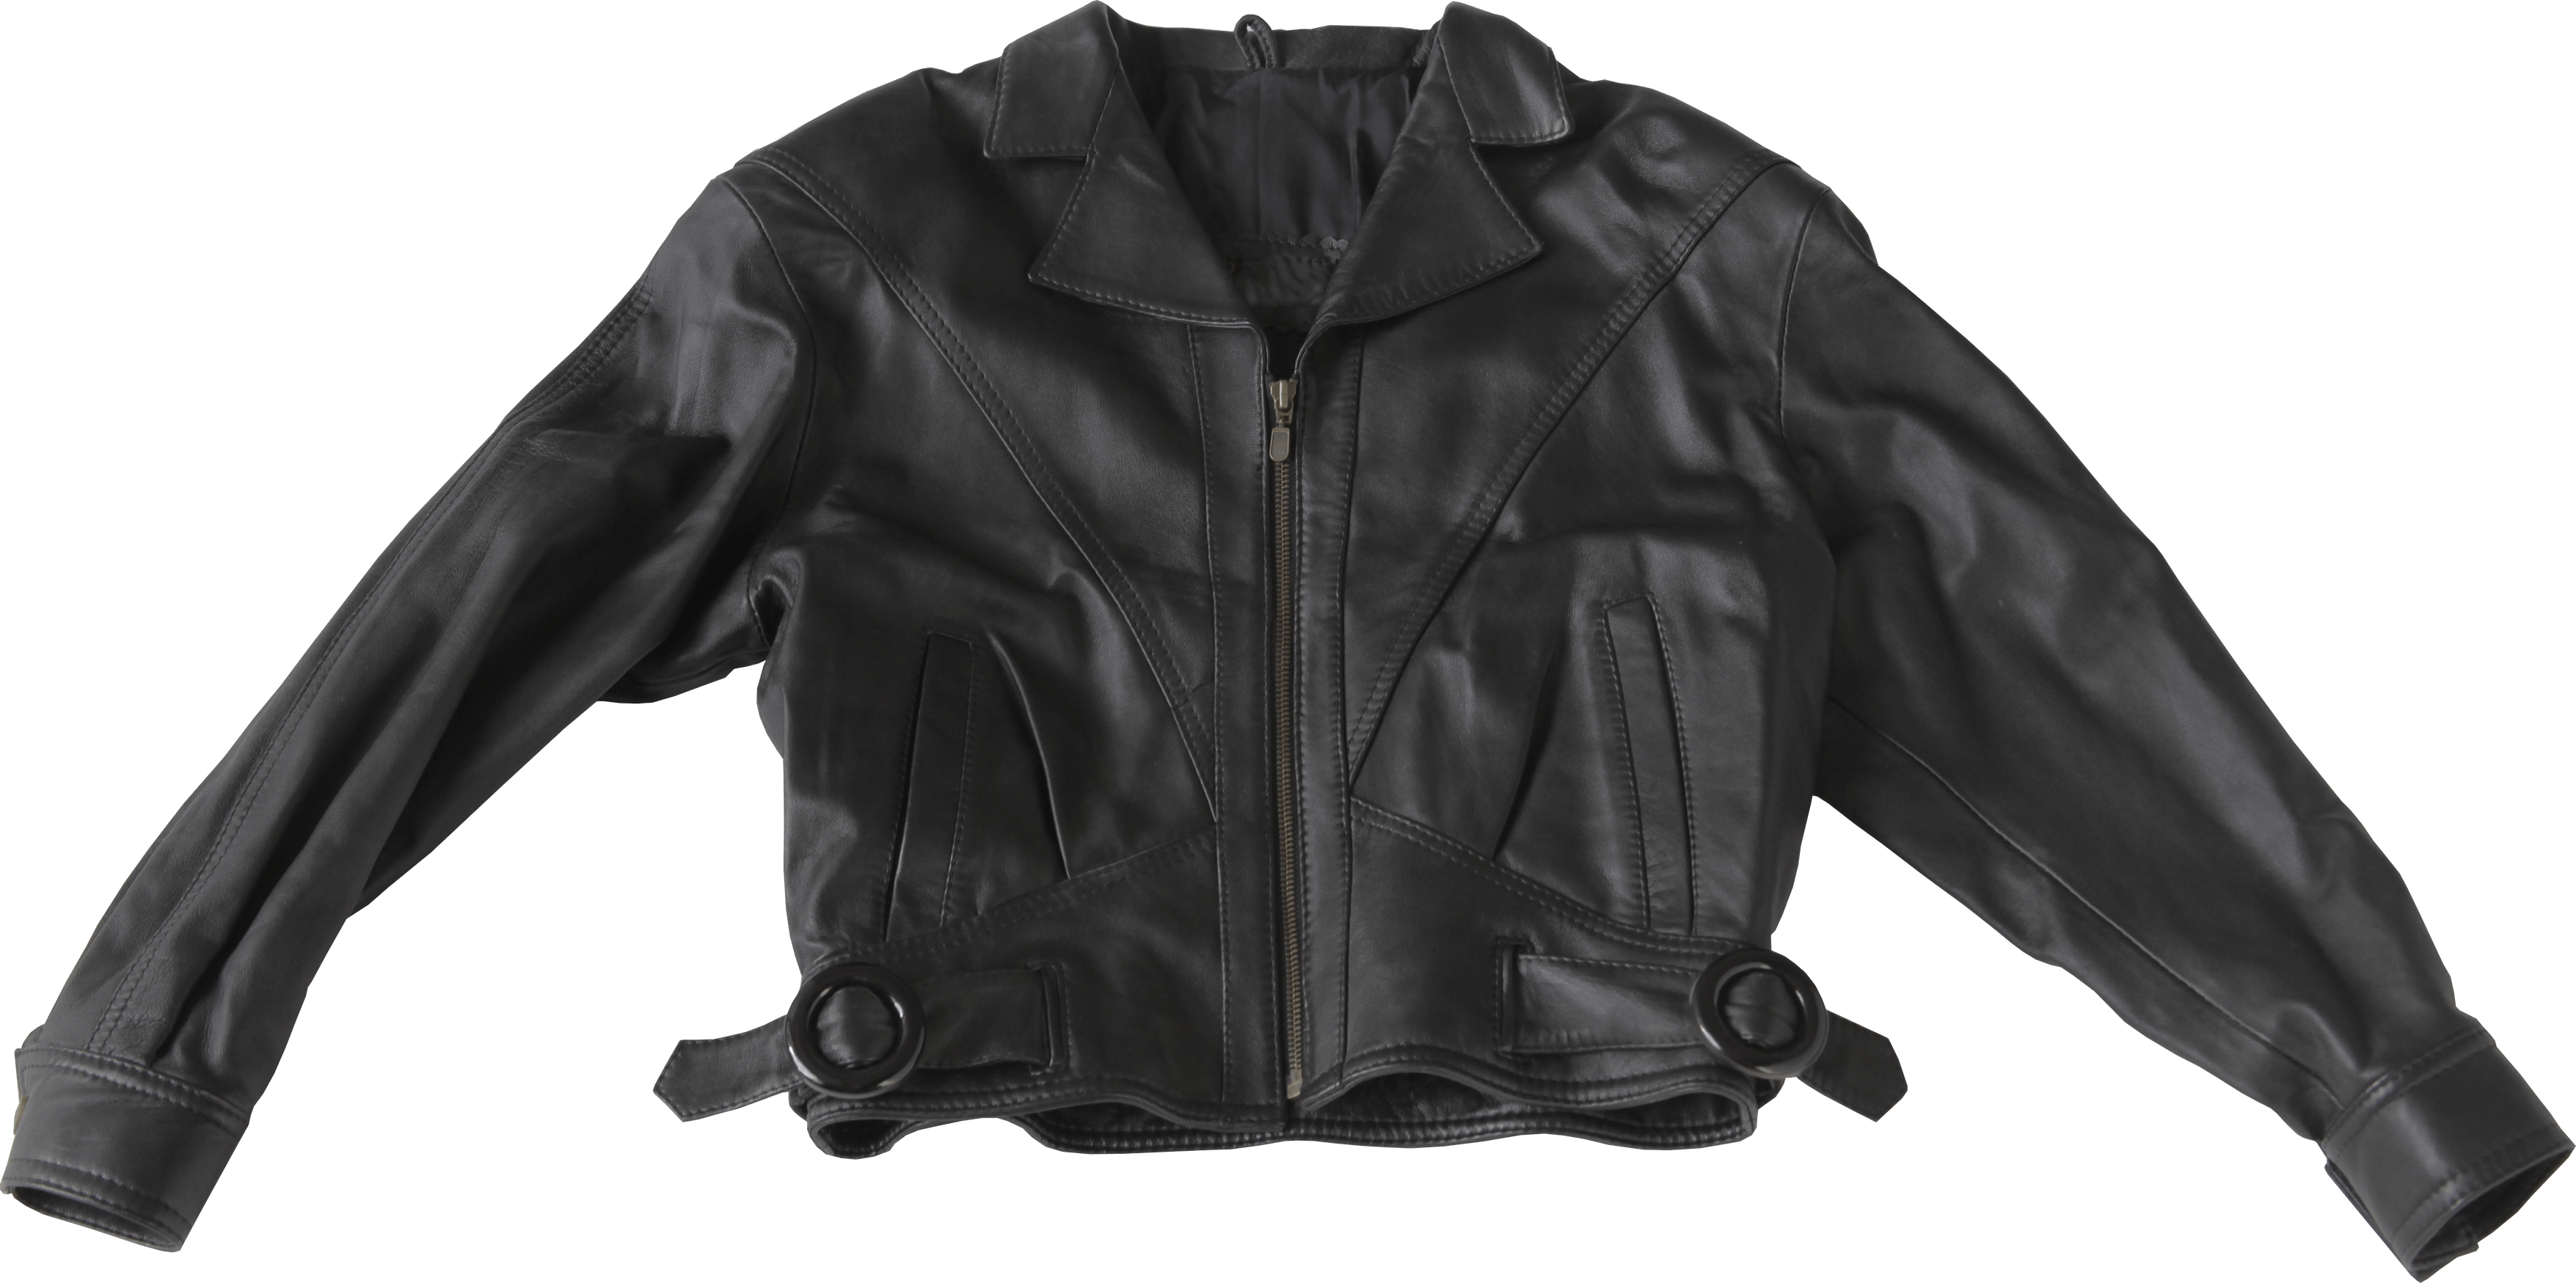 Black Leather Jacket Png Image PNG Image